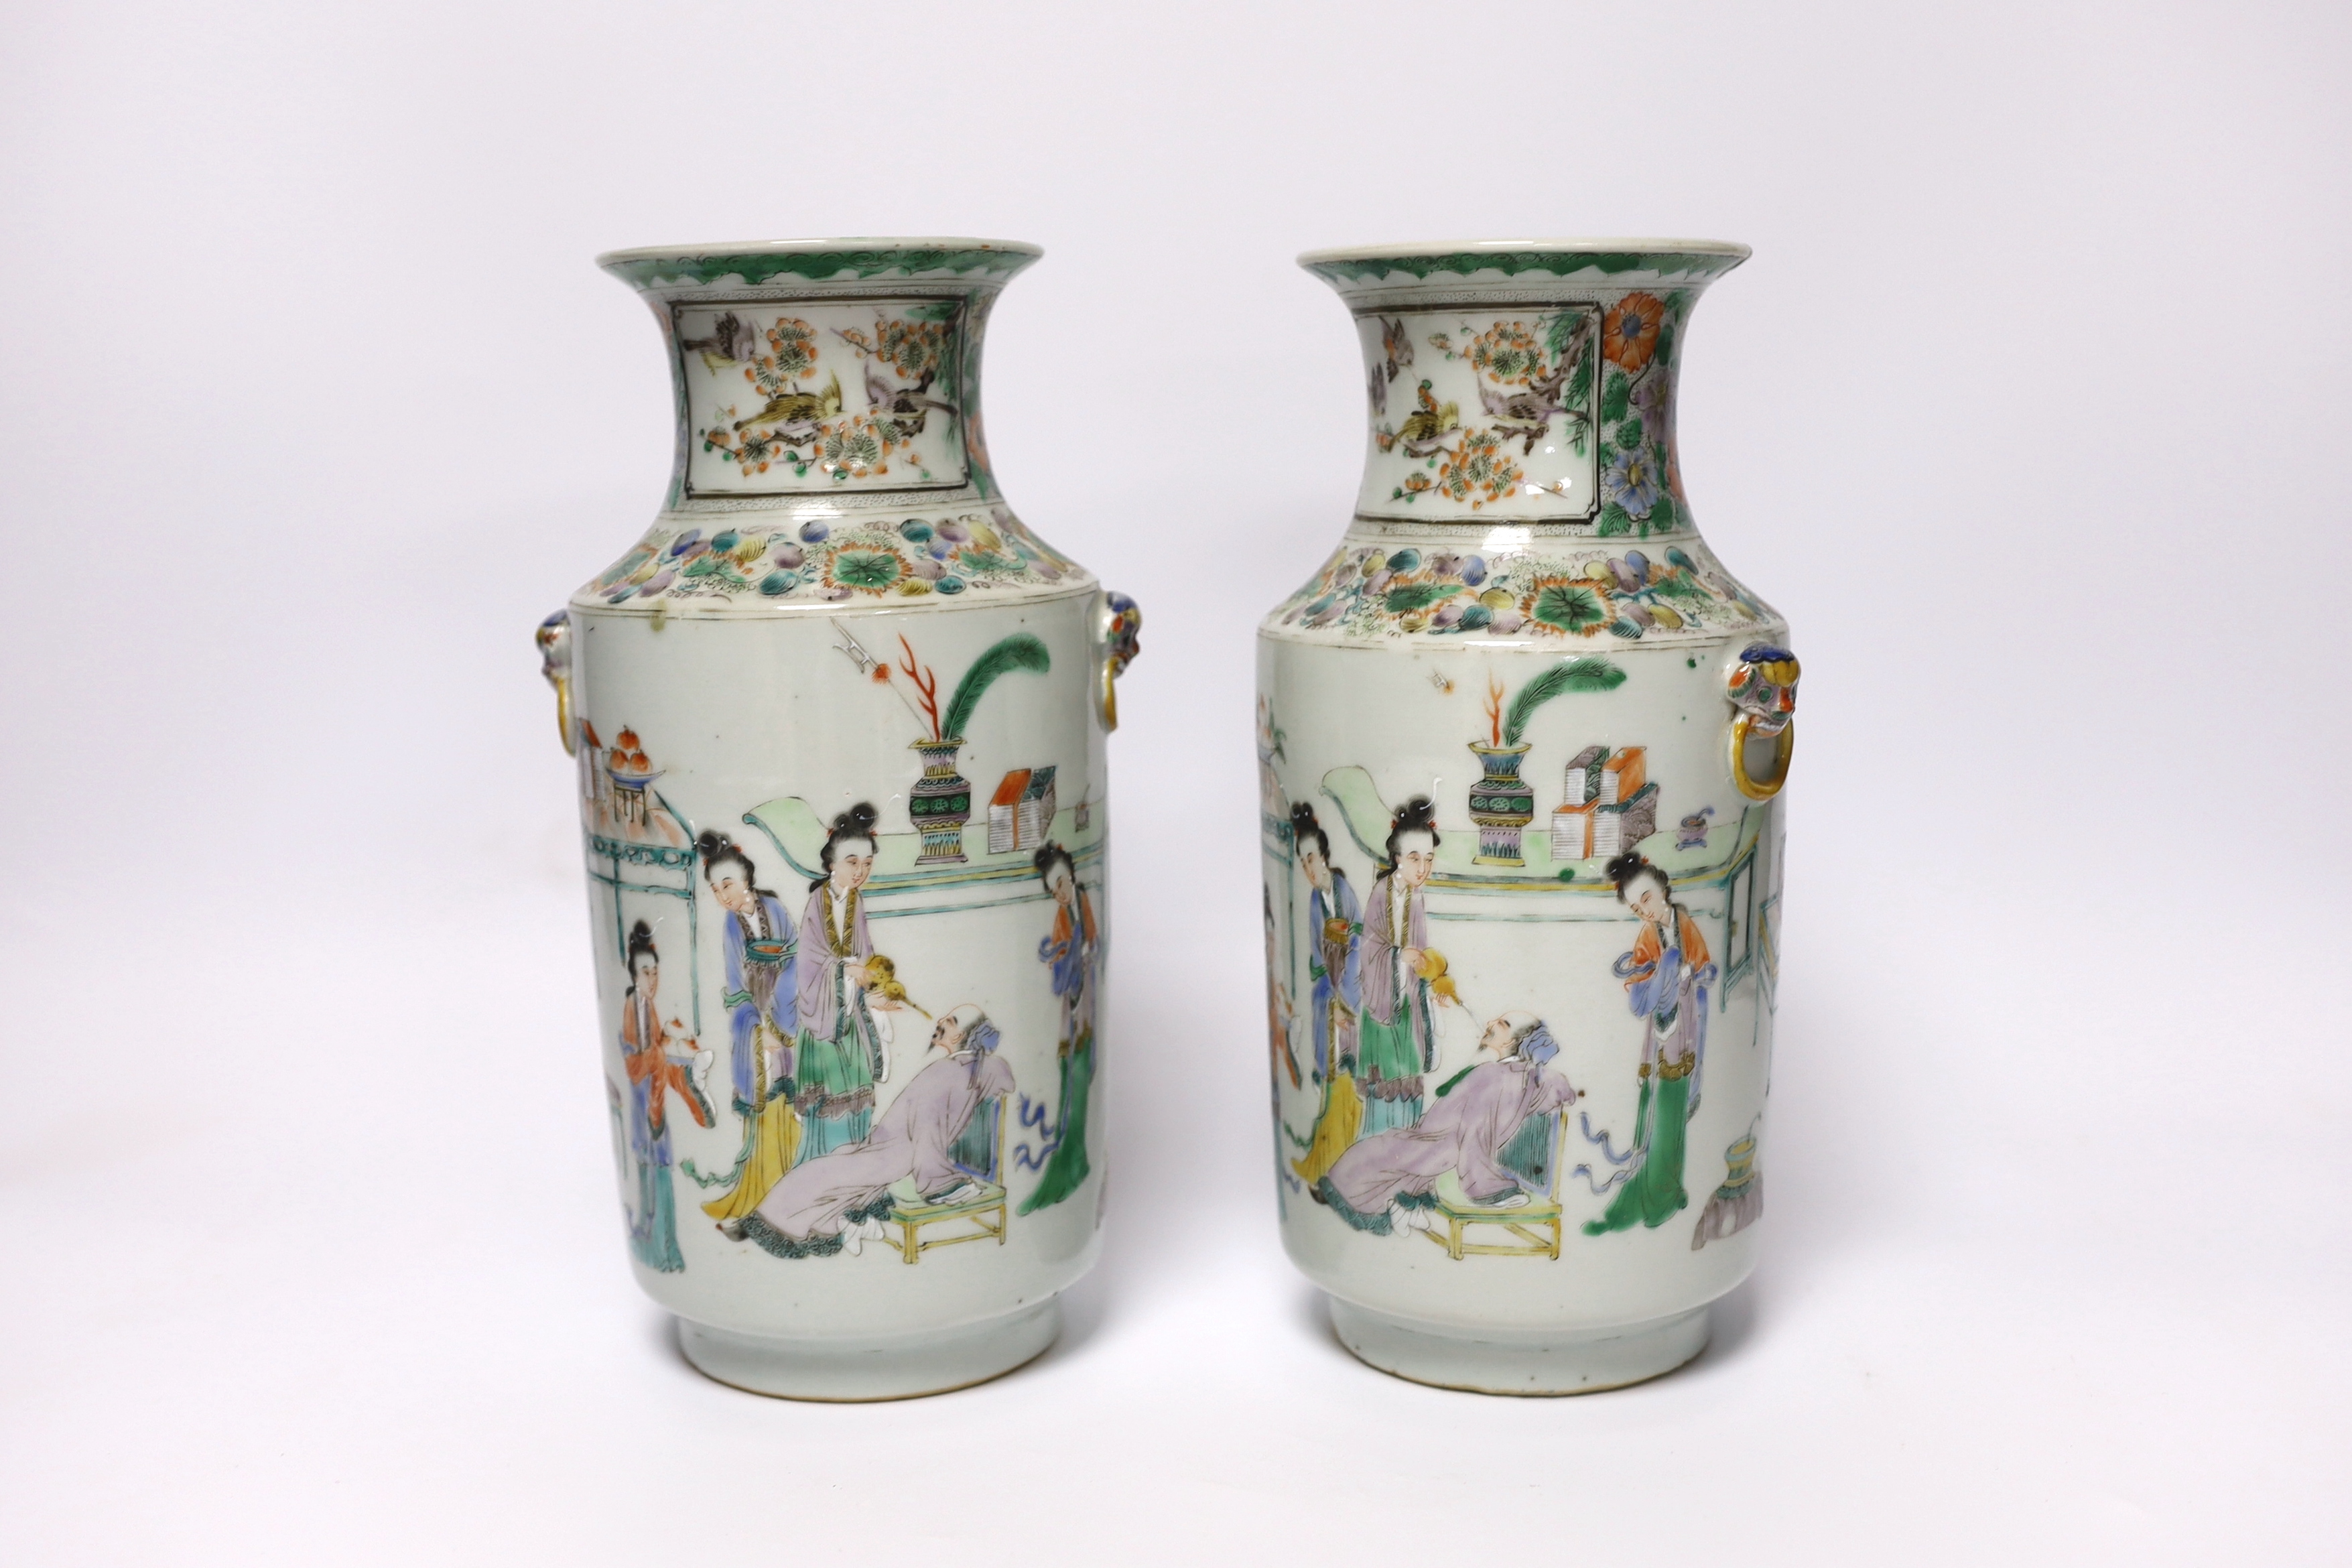 A pair of 19th century Chinese famille verte ‘ladies’ vases, 23cm